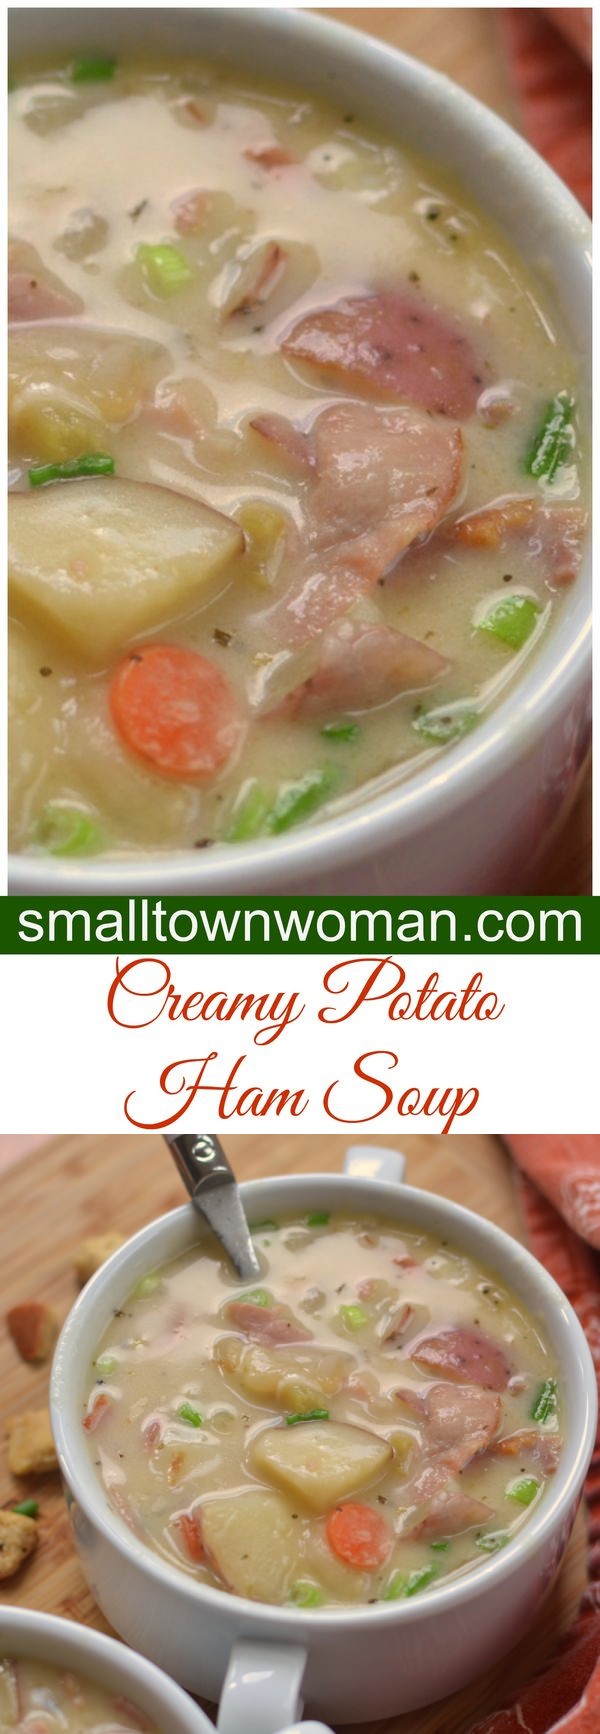 Creamy Potato & Ham Soup